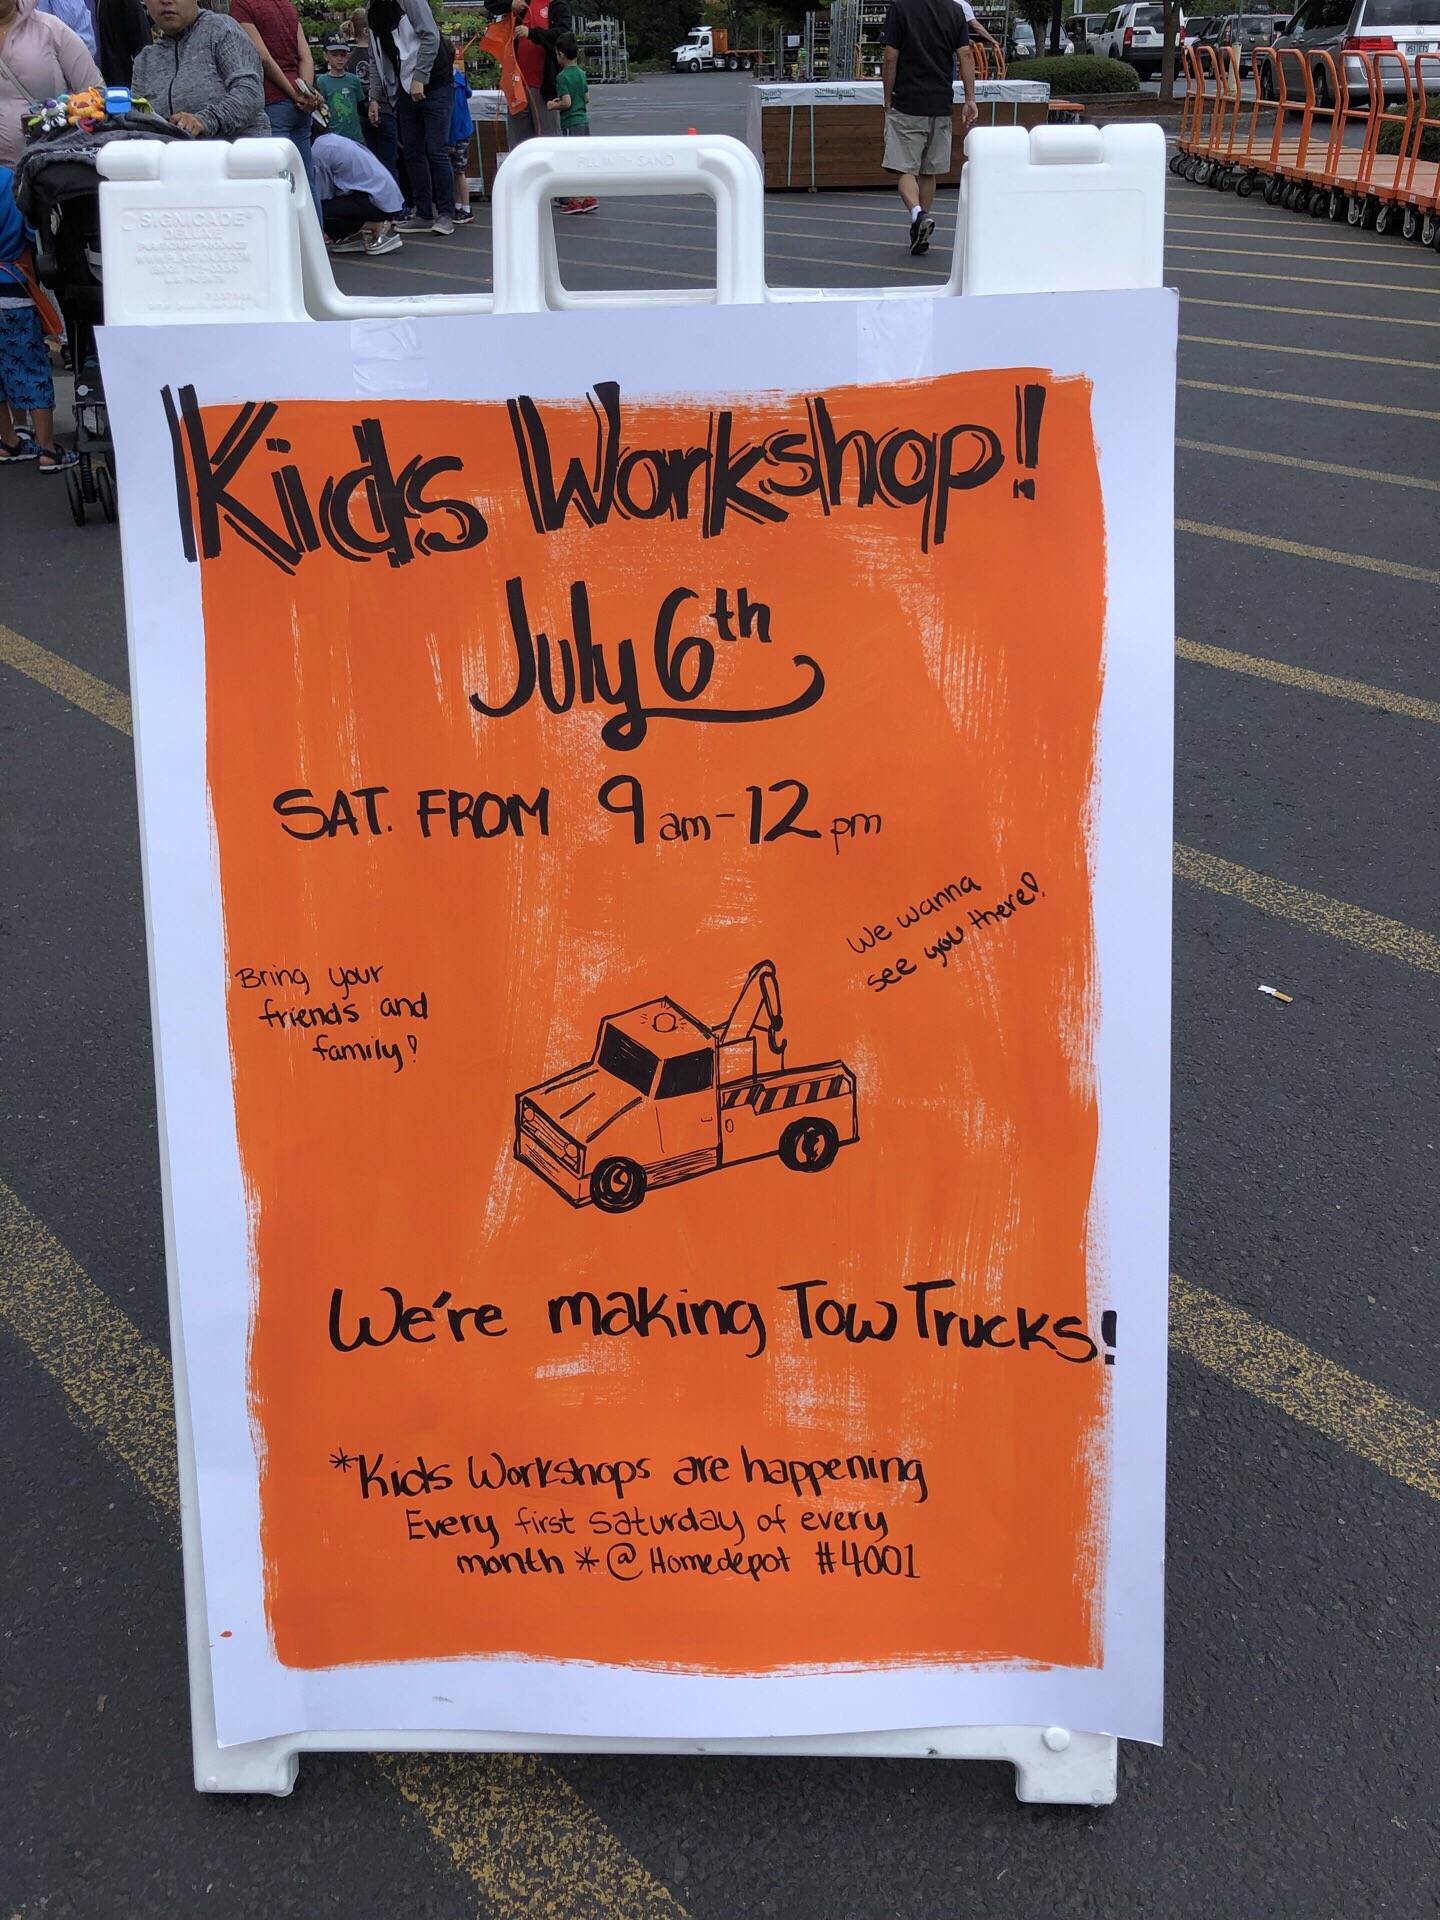 每月的第一个周六，Home Depot都会有kids workshop手工活动，免费的噢……😄